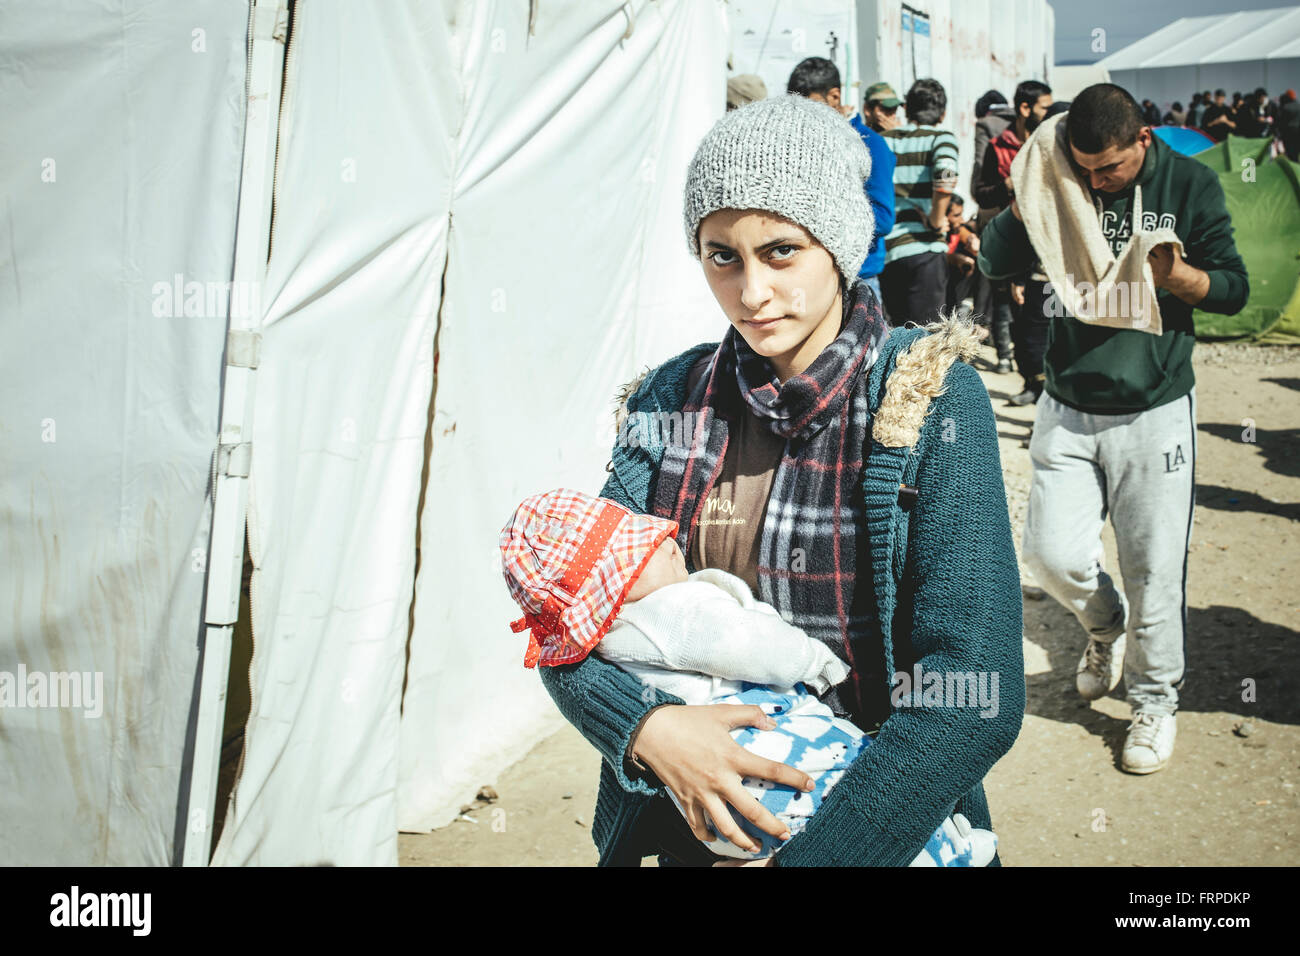 Idomeni sur le camp de réfugiés de la frontière Grèce Macédoine, la mère avec son bébé, Idomeni, Macédoine Centrale, Grèce Banque D'Images